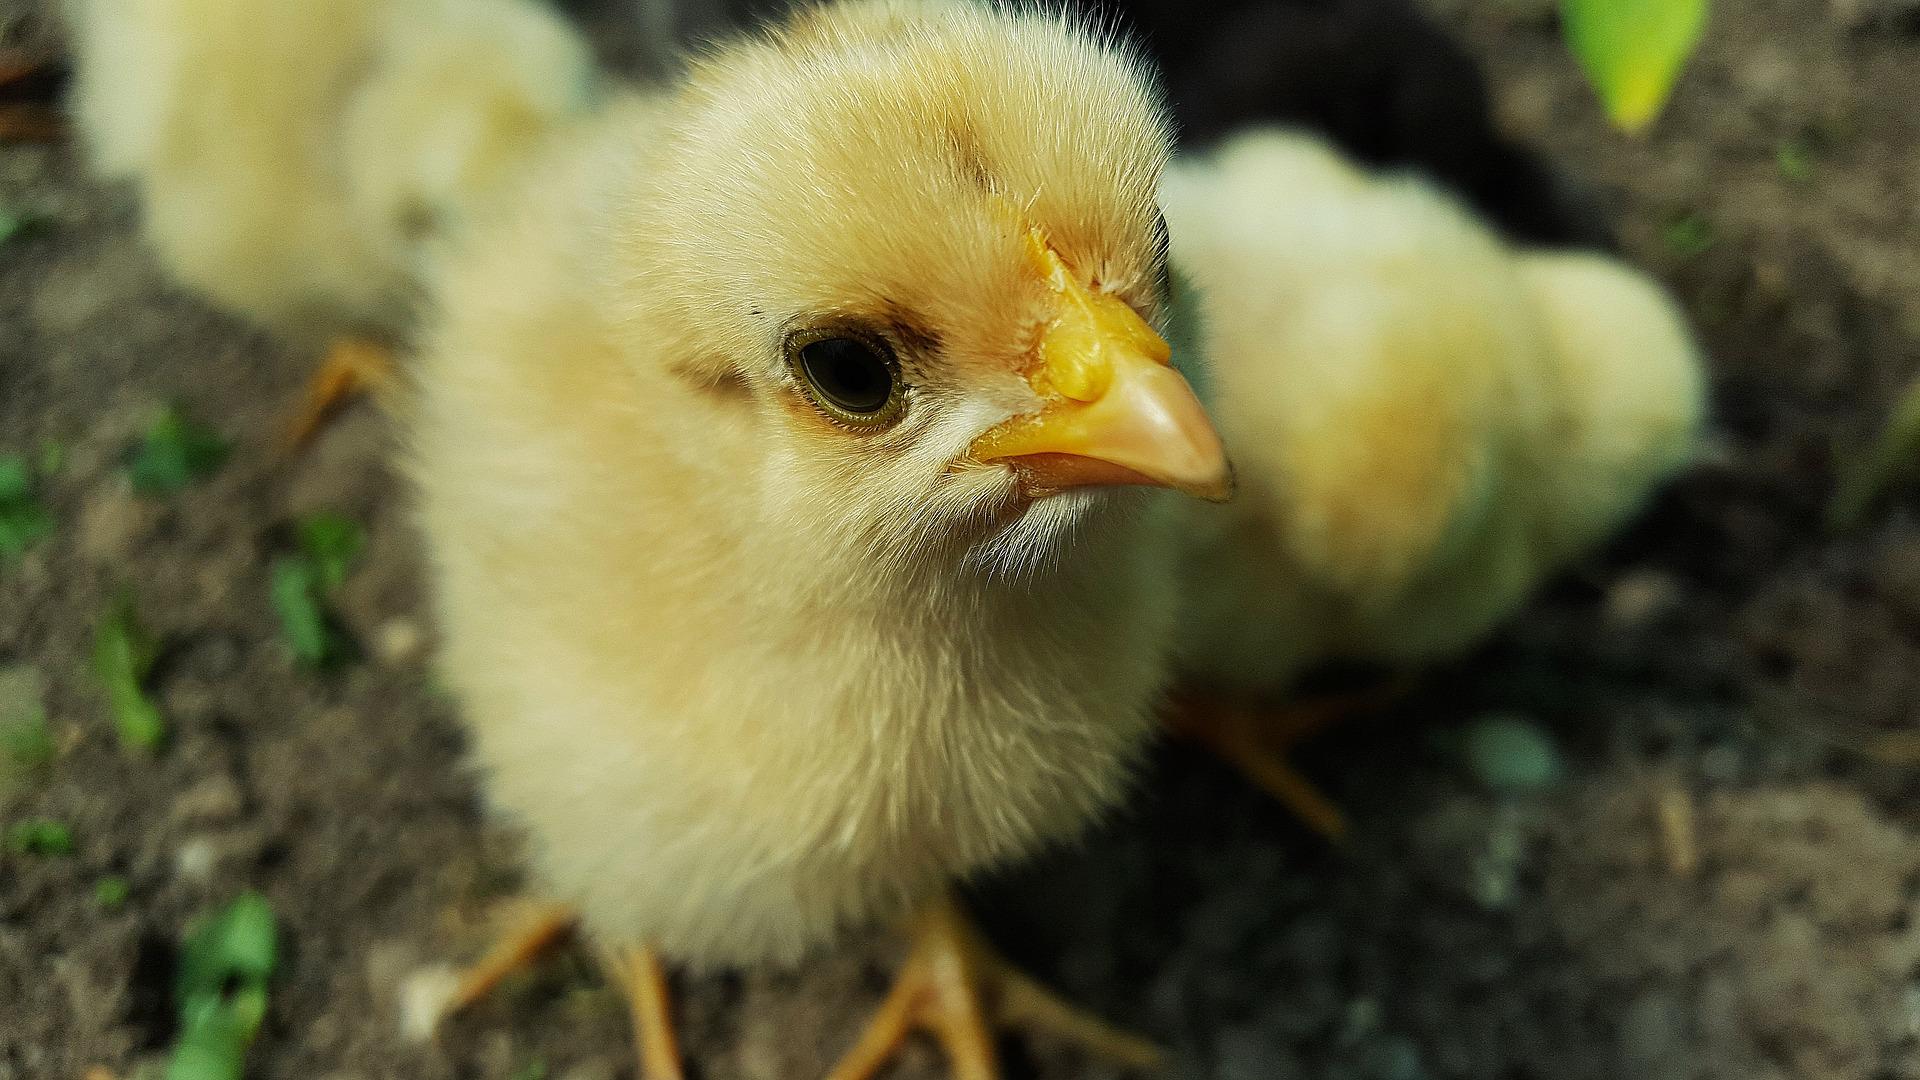 Comment savoir si un œuf de poule est fécondé ?